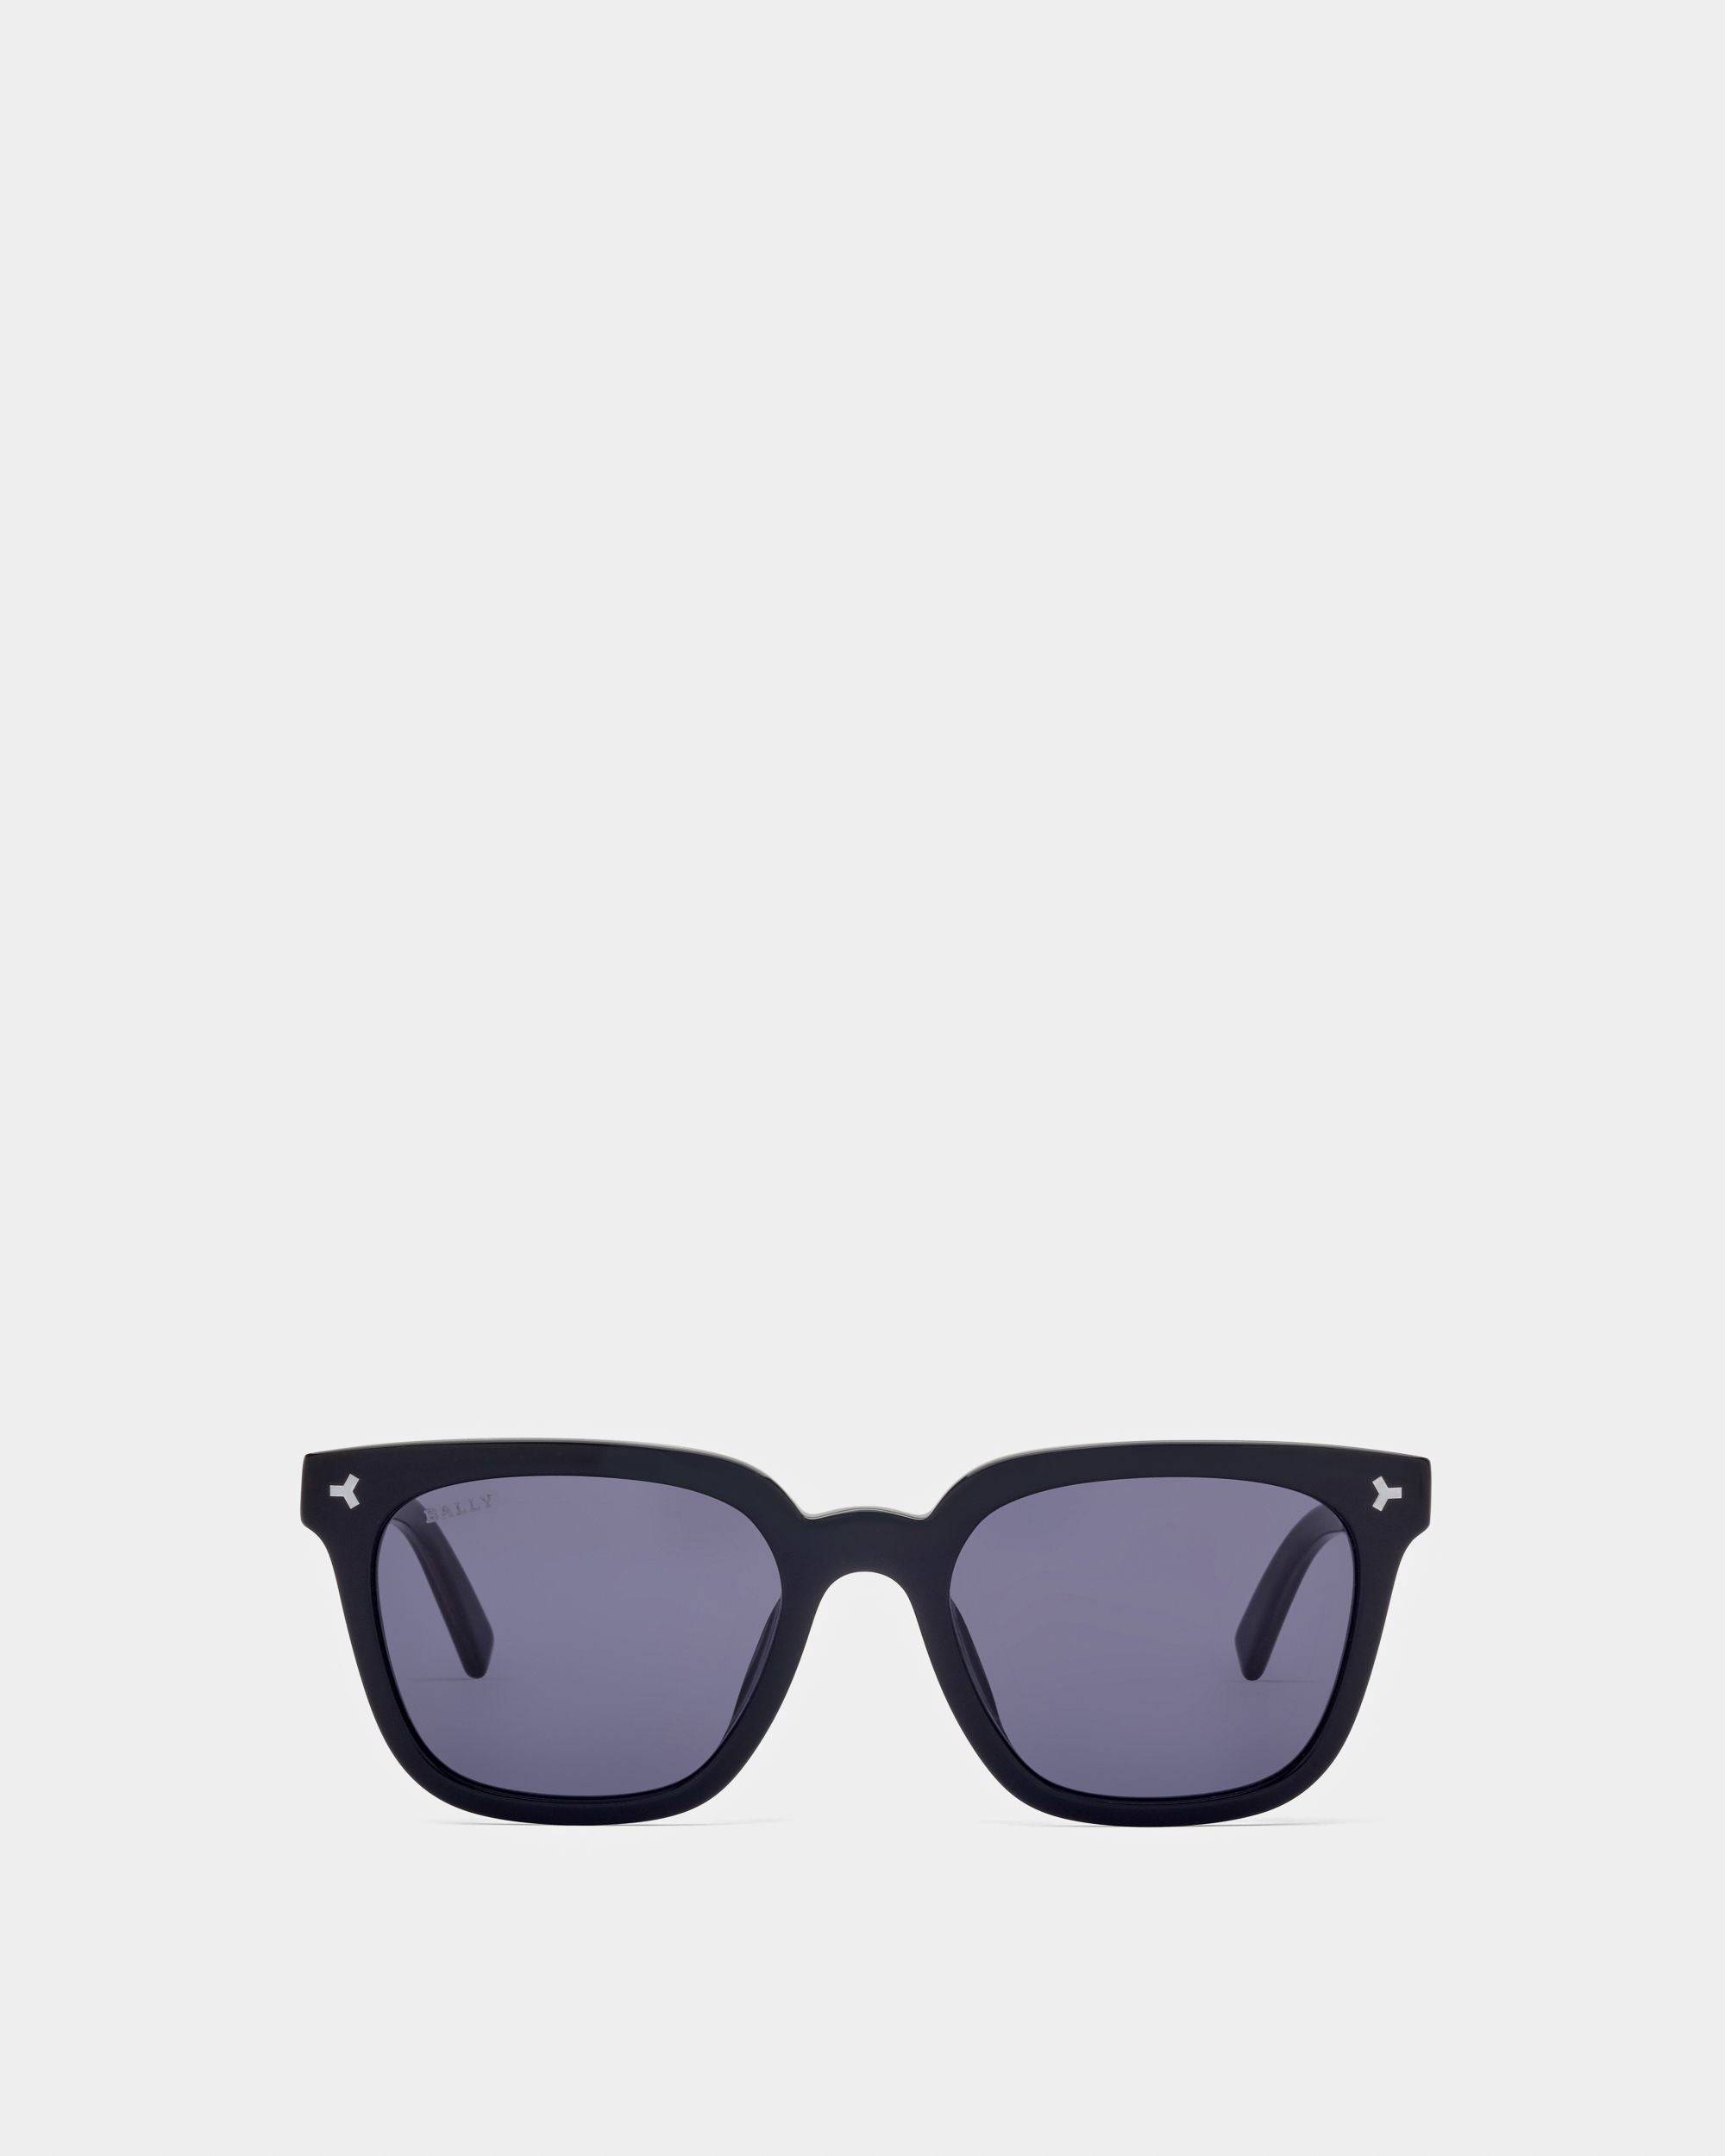 Designer Sunglasses for Men: Aviators, Wayfarers & more